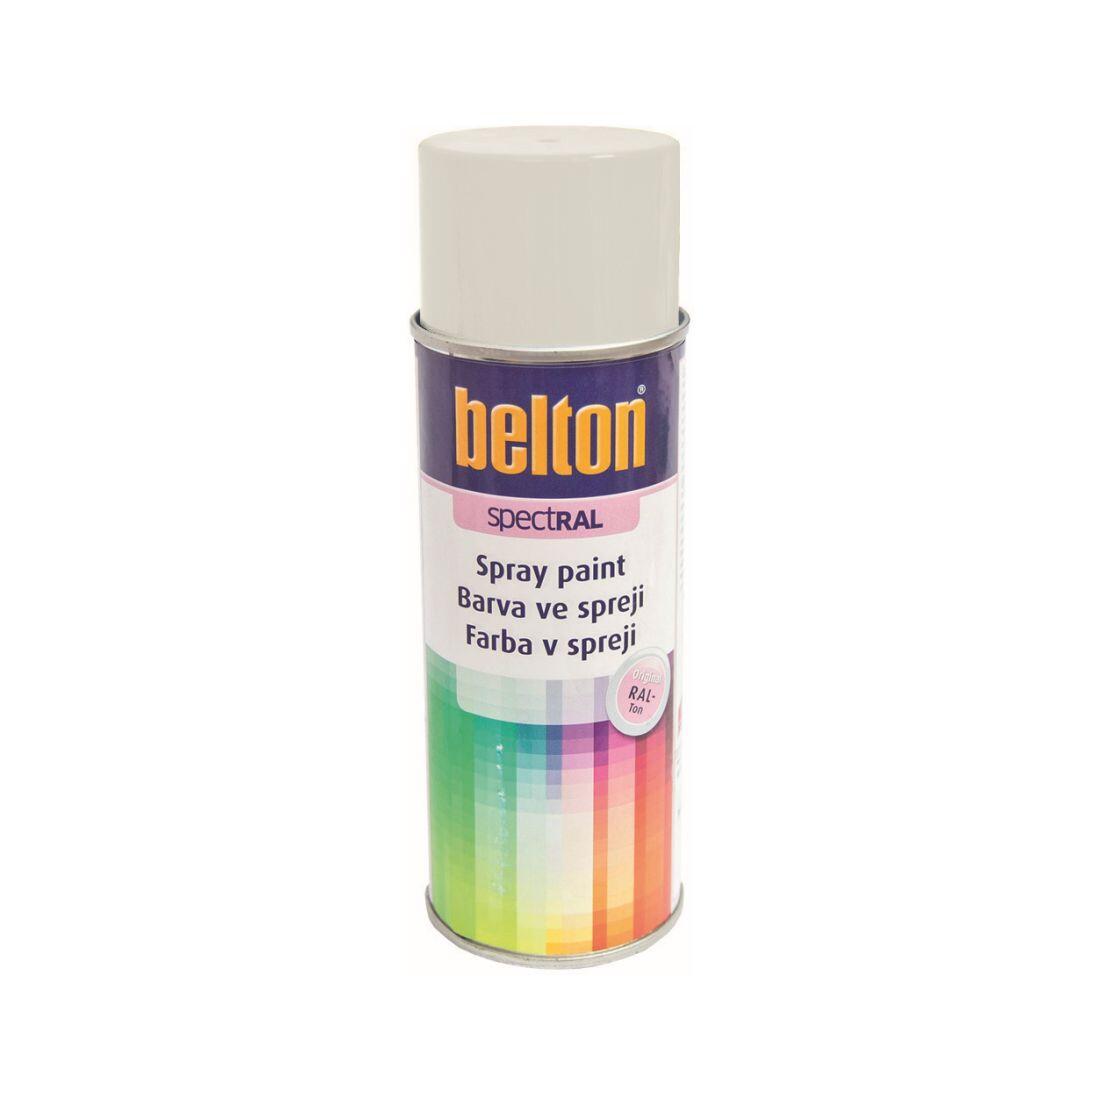 barva ve spreji BELTON RAL 9003, 400ml BÍ signální 0.31 Kg MAXMIX Sklad14 825571 20